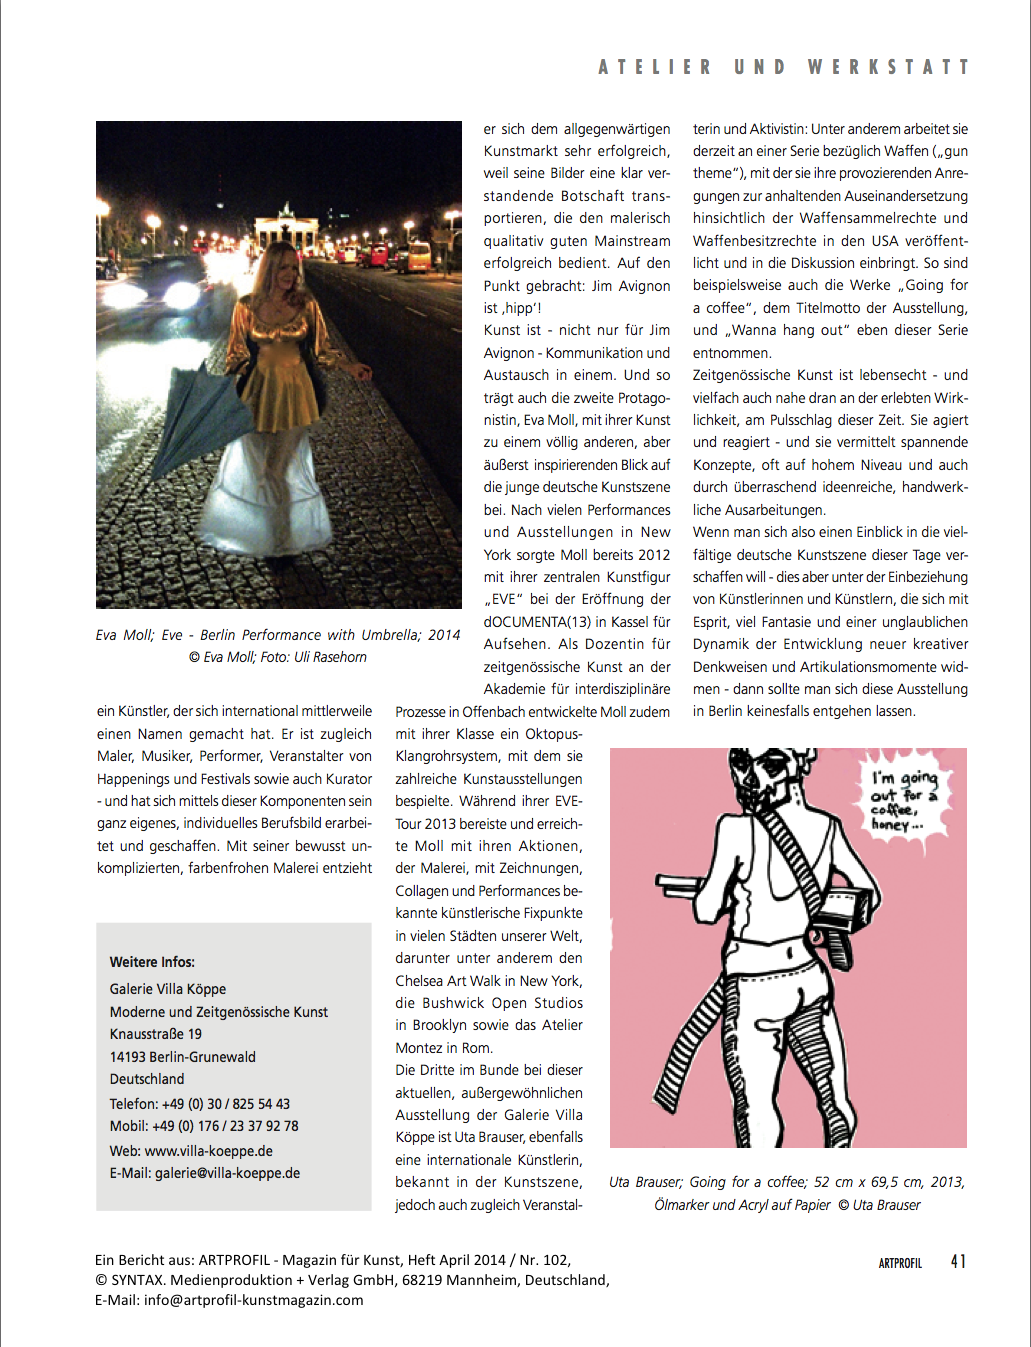 Ein Bericht aus: ARTPROFIL – Magazin für Kunst, Heft April 2014 / Nr. 102,
© SYNTAX. Medienproduktion + Verlag GmbH, 68219 Mannheim, Deutschland,
E-Mail: info@artprofil-kunstmagazin.com